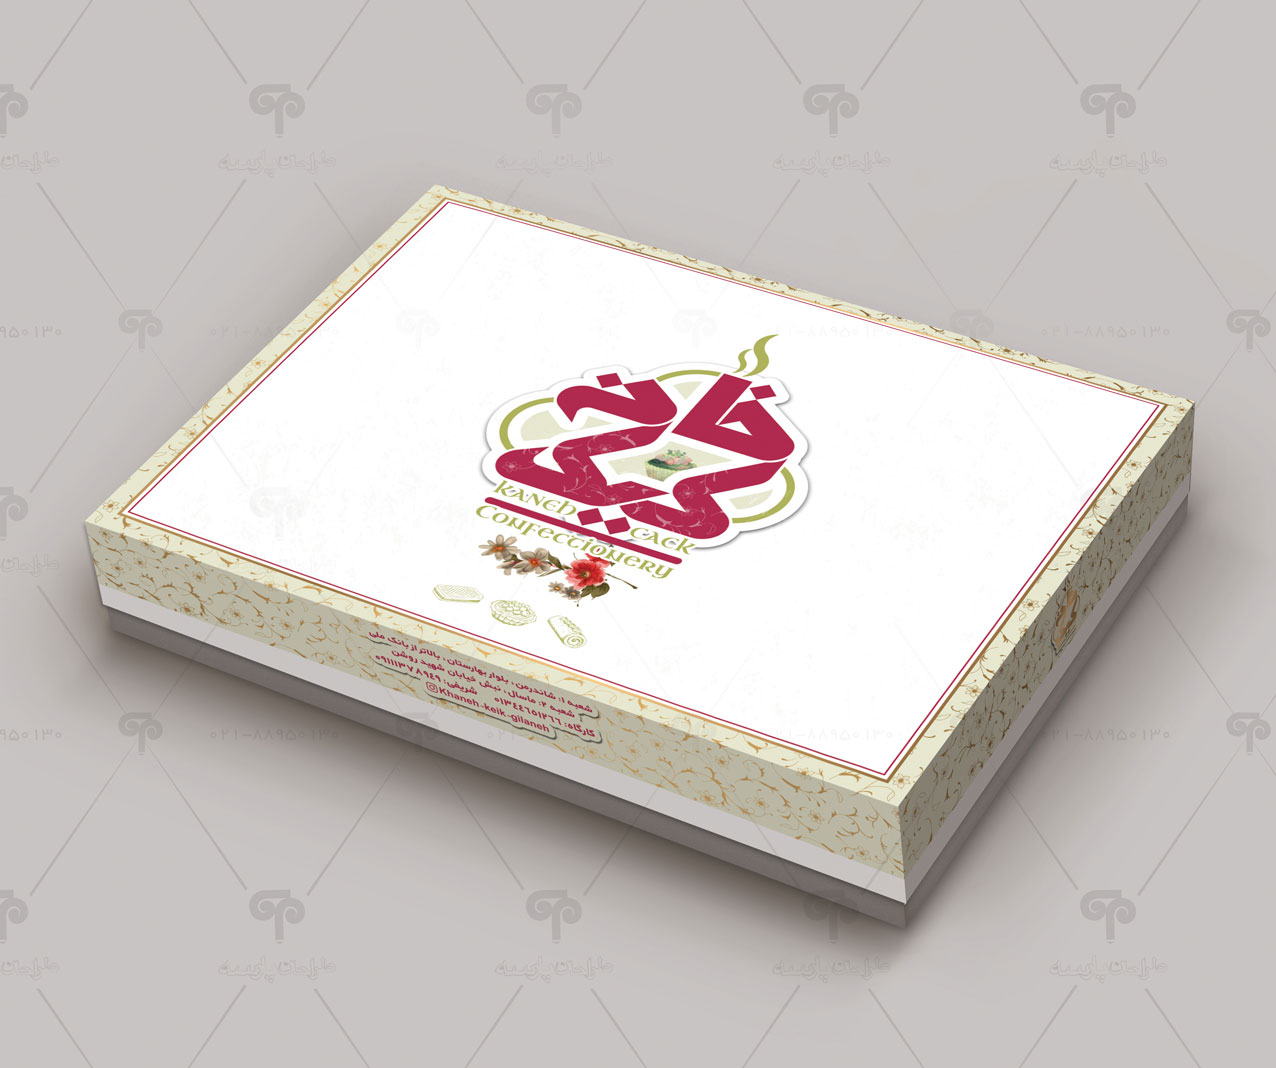 طراحی جعبه شیرینی خانه کیک